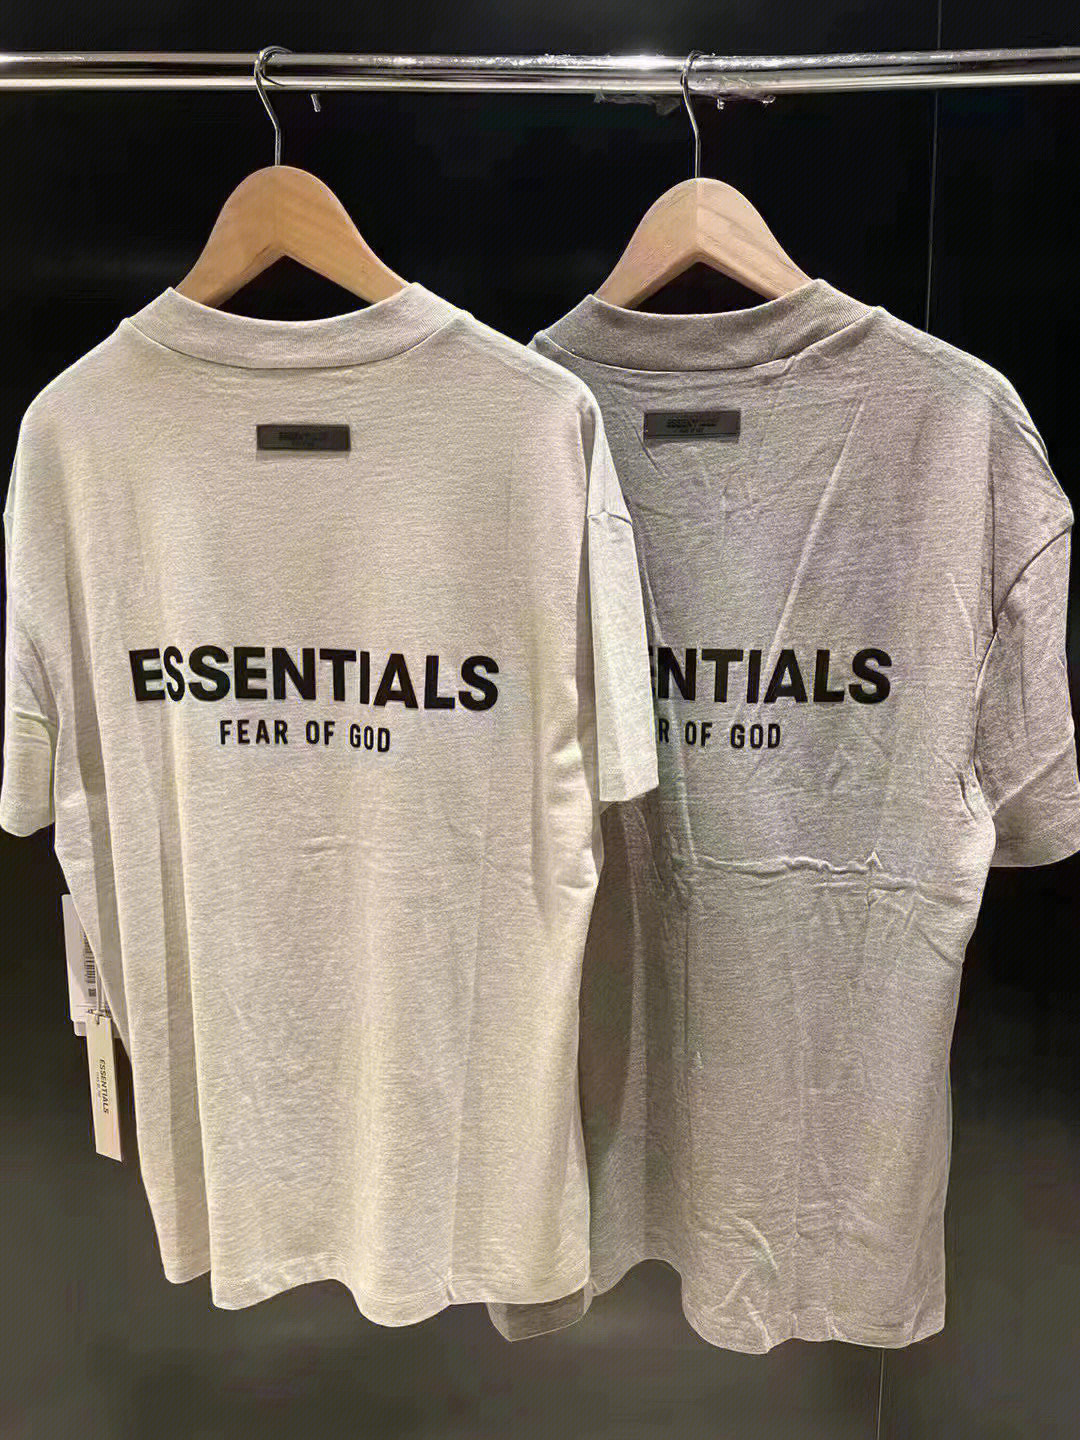 essentials中国门店图片